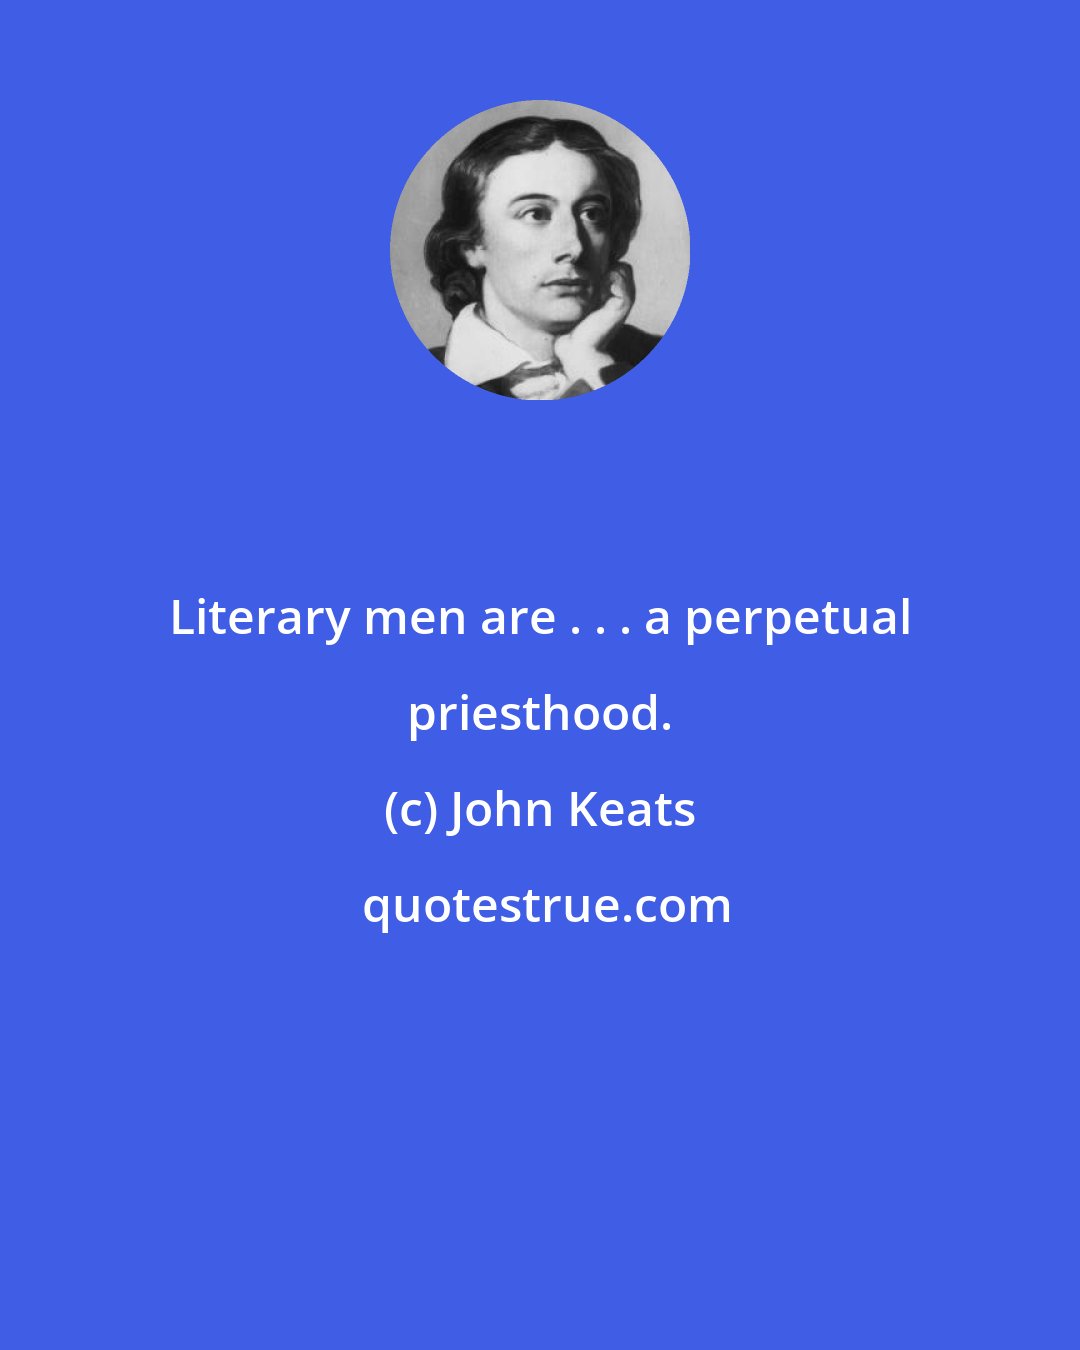 John Keats: Literary men are . . . a perpetual priesthood.